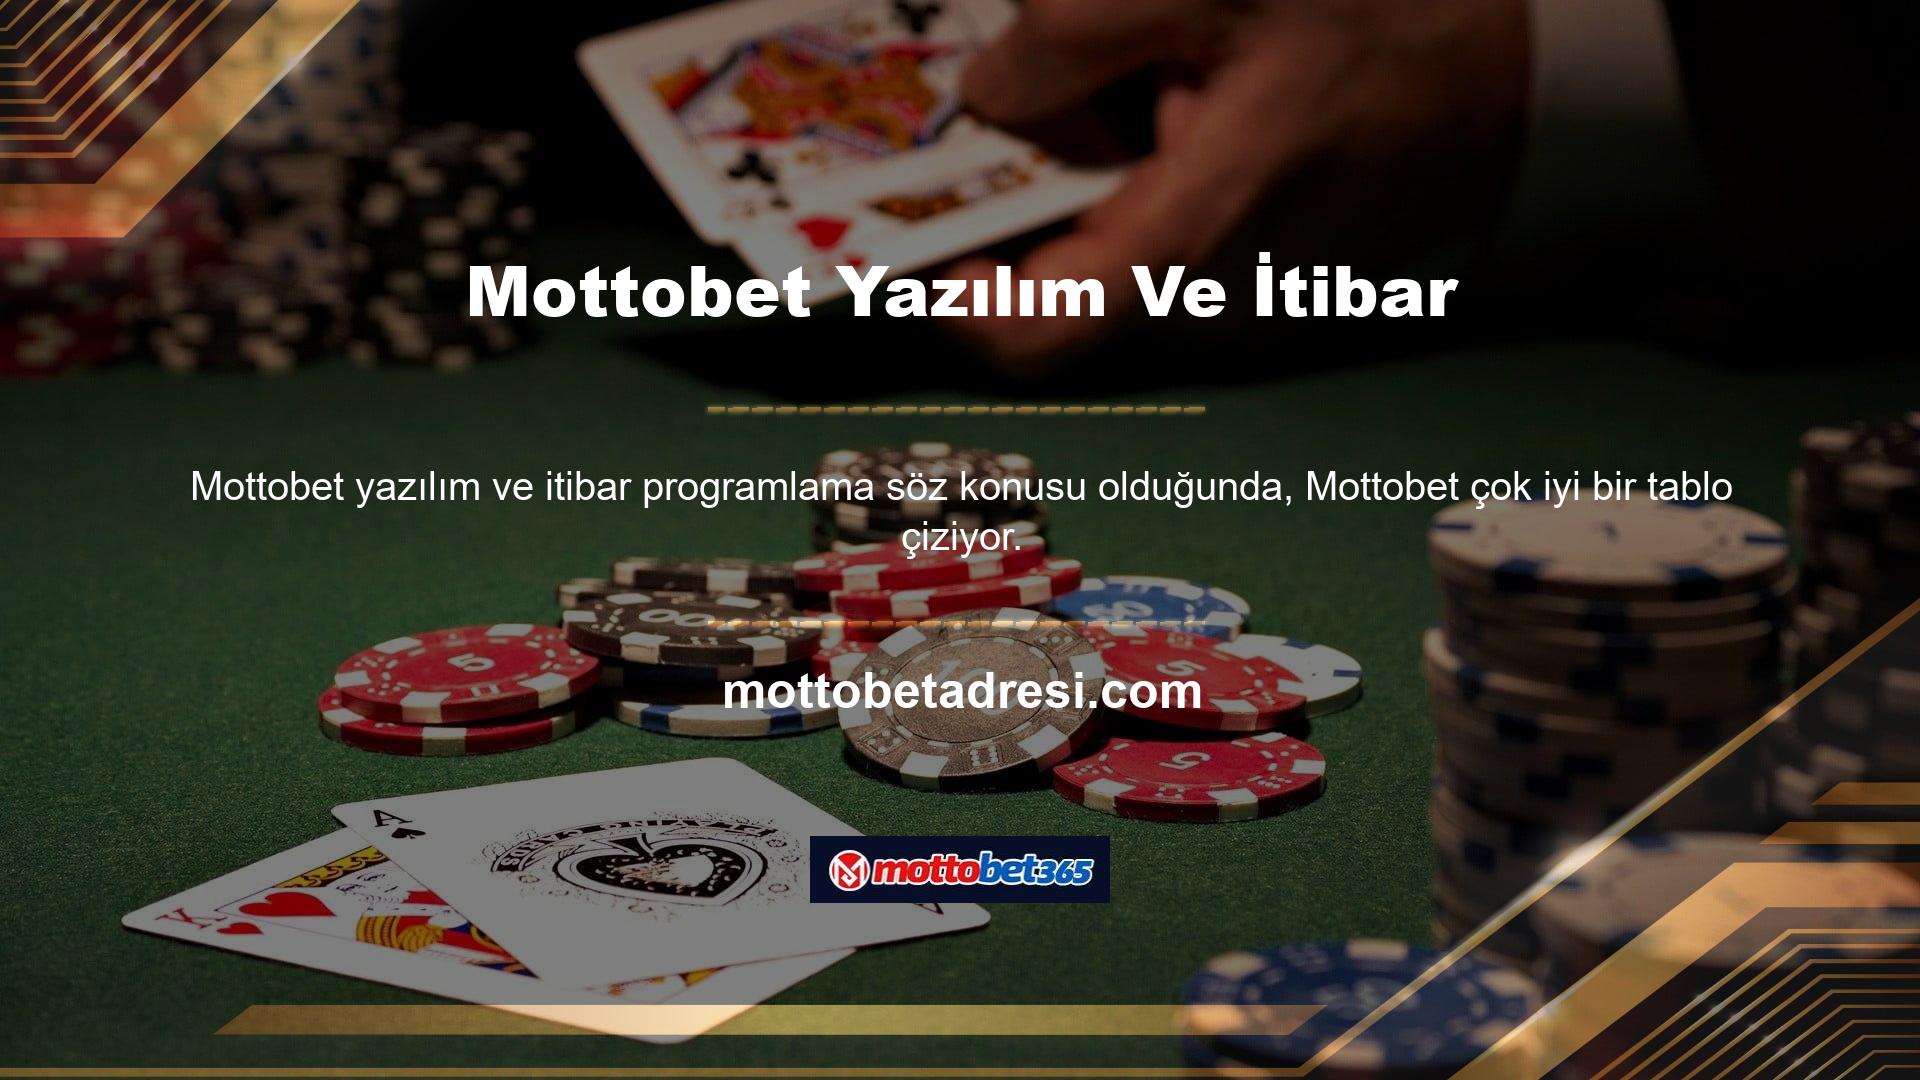 Piyasada bu kadar çok casino sitesi bulunan Mottobet Türkiye sitesine erişmenin iki ana yolu var